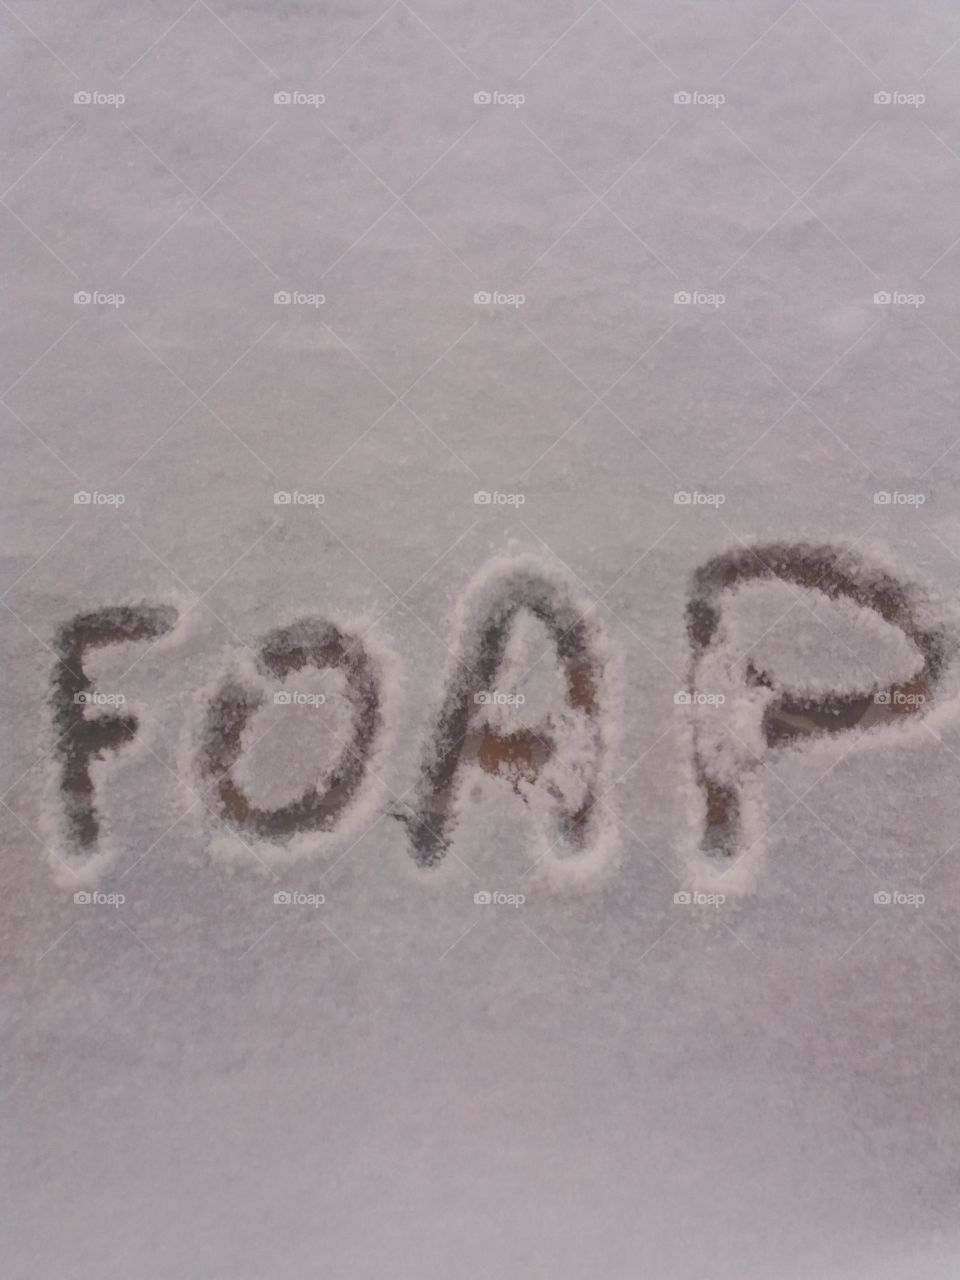 Foap in the snow